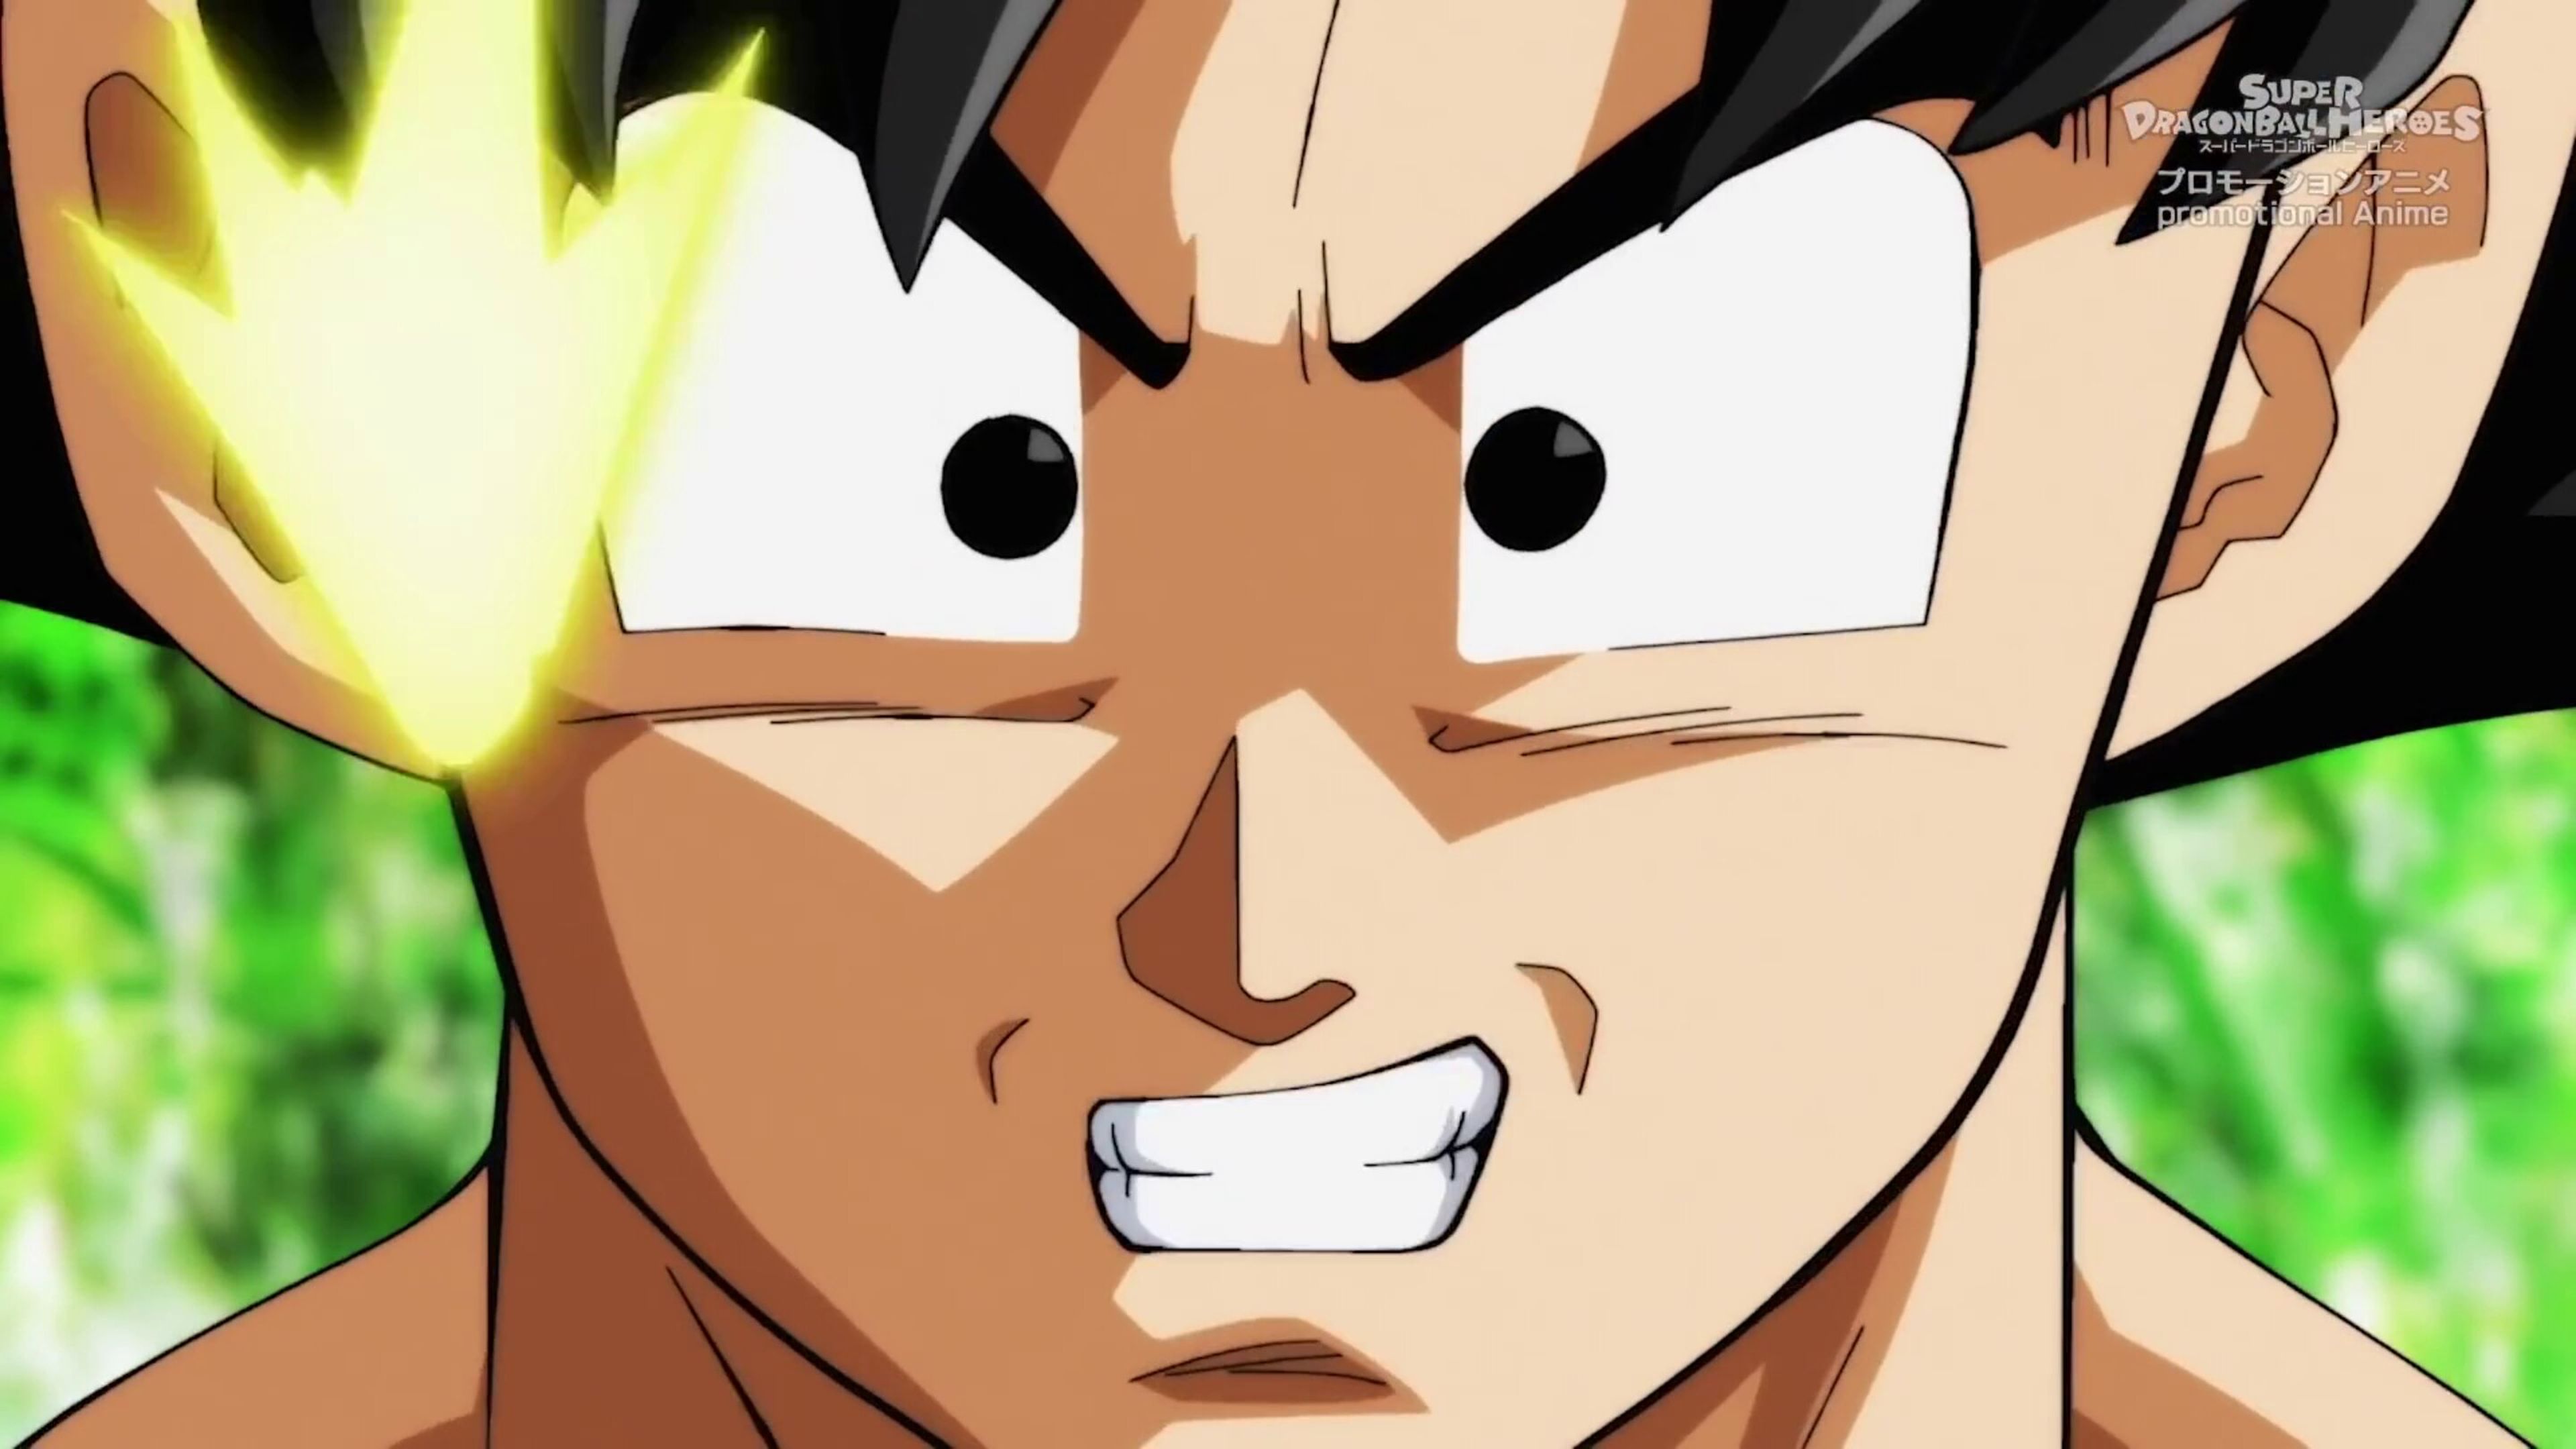 Desveladas las primeras imágenes del nuevo episodio de Dragon Ball Super - ¿Se reencontrará Goku con ese personaje?